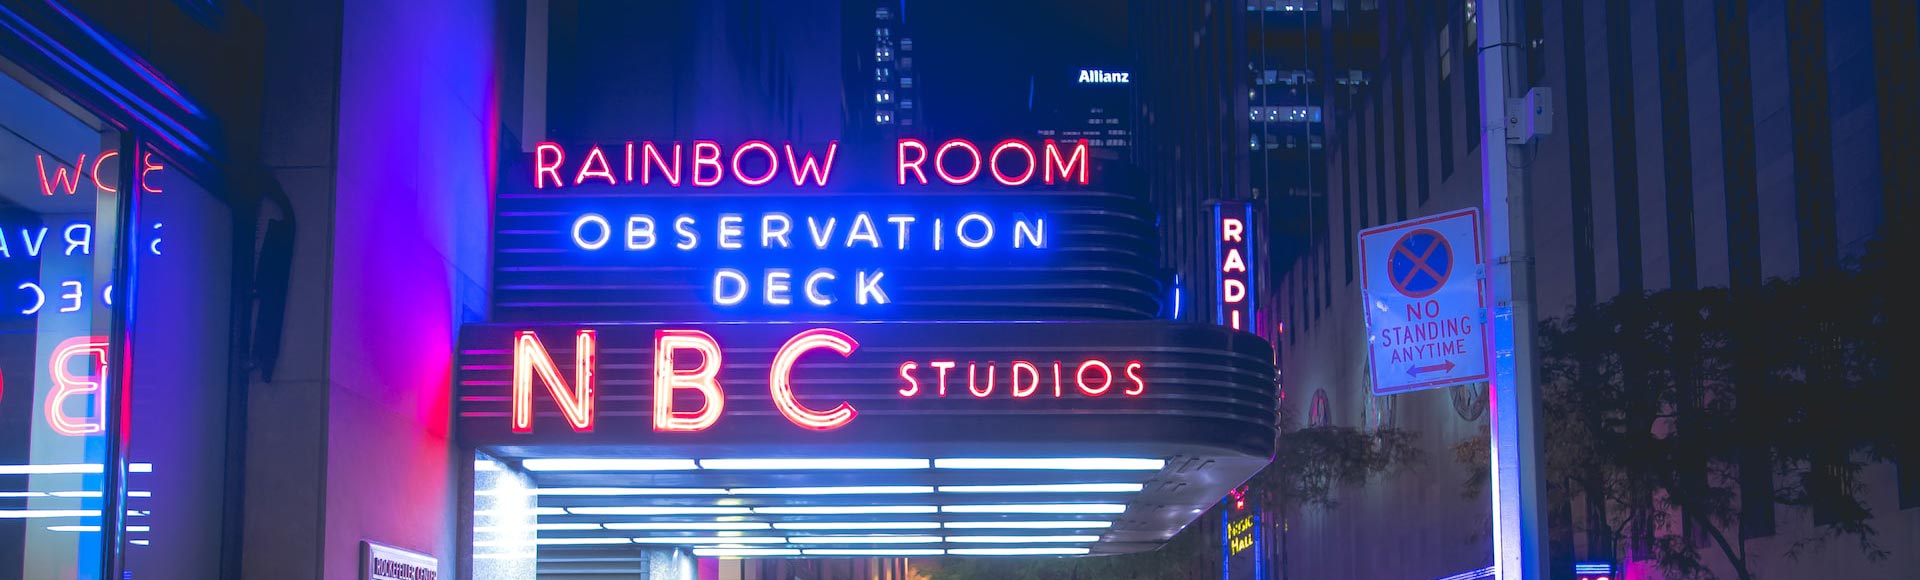 NBC Gözlem Güvertesi neon tabelası gece